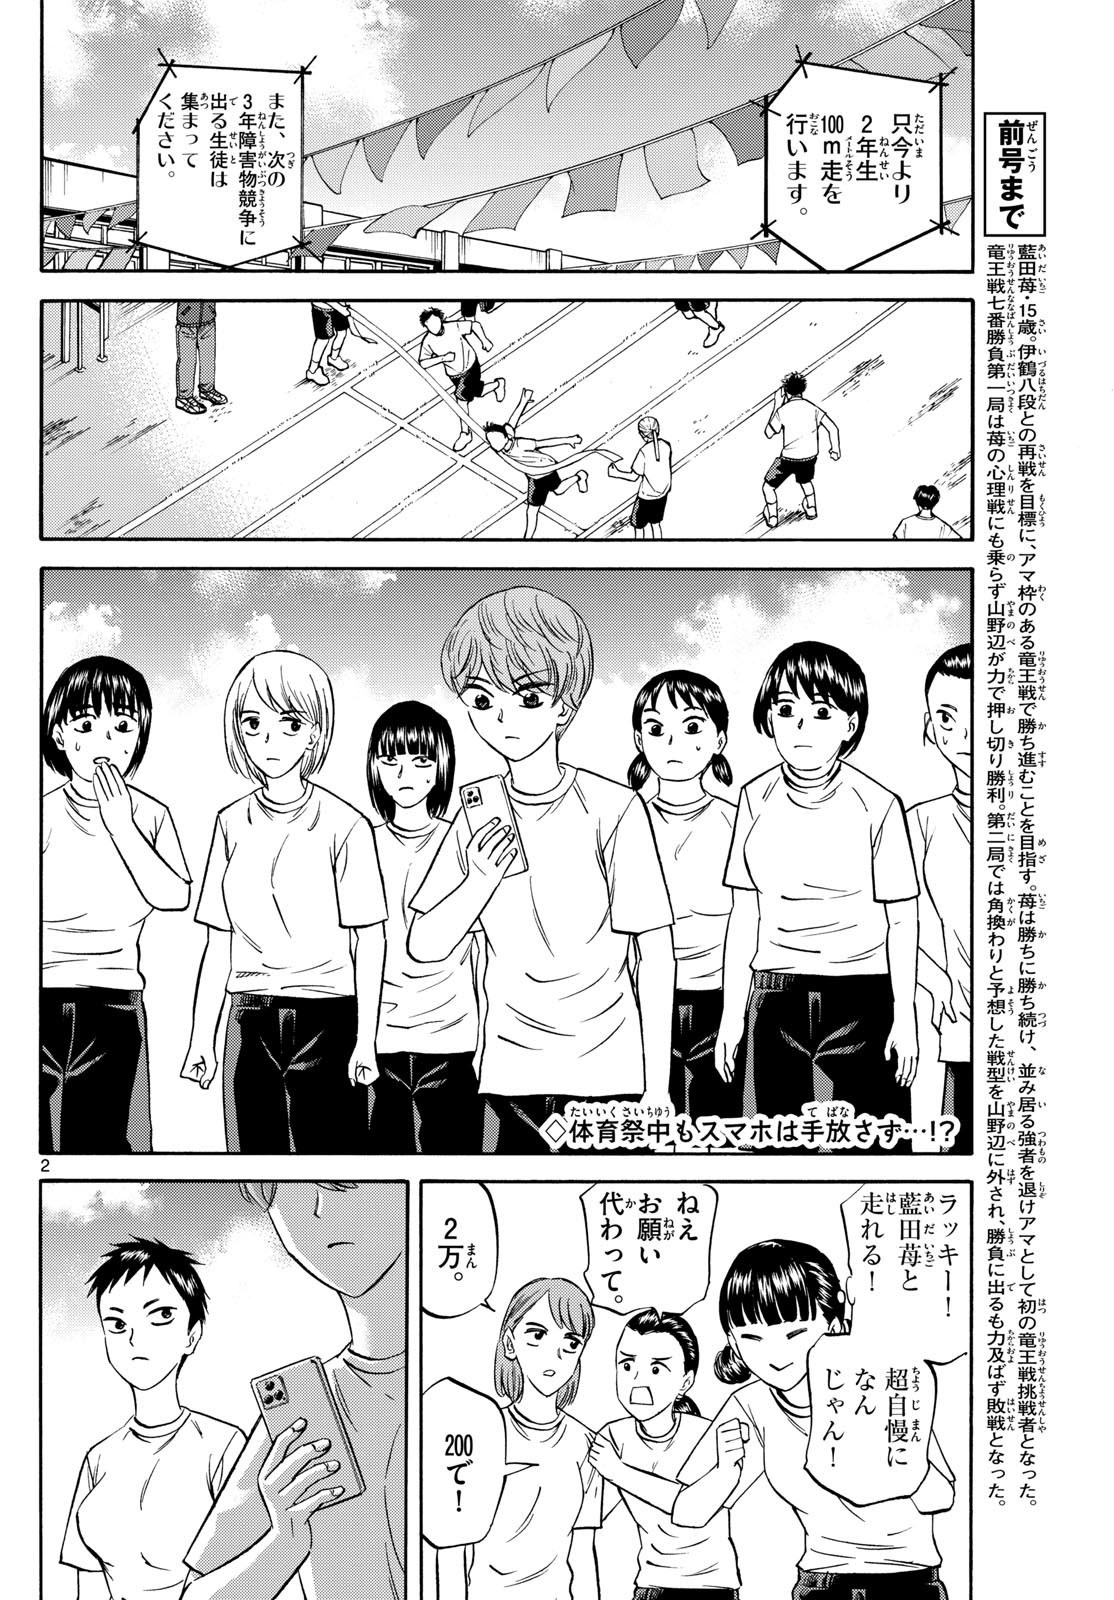 Ryu-to-Ichigo - Chapter 158 - Page 2